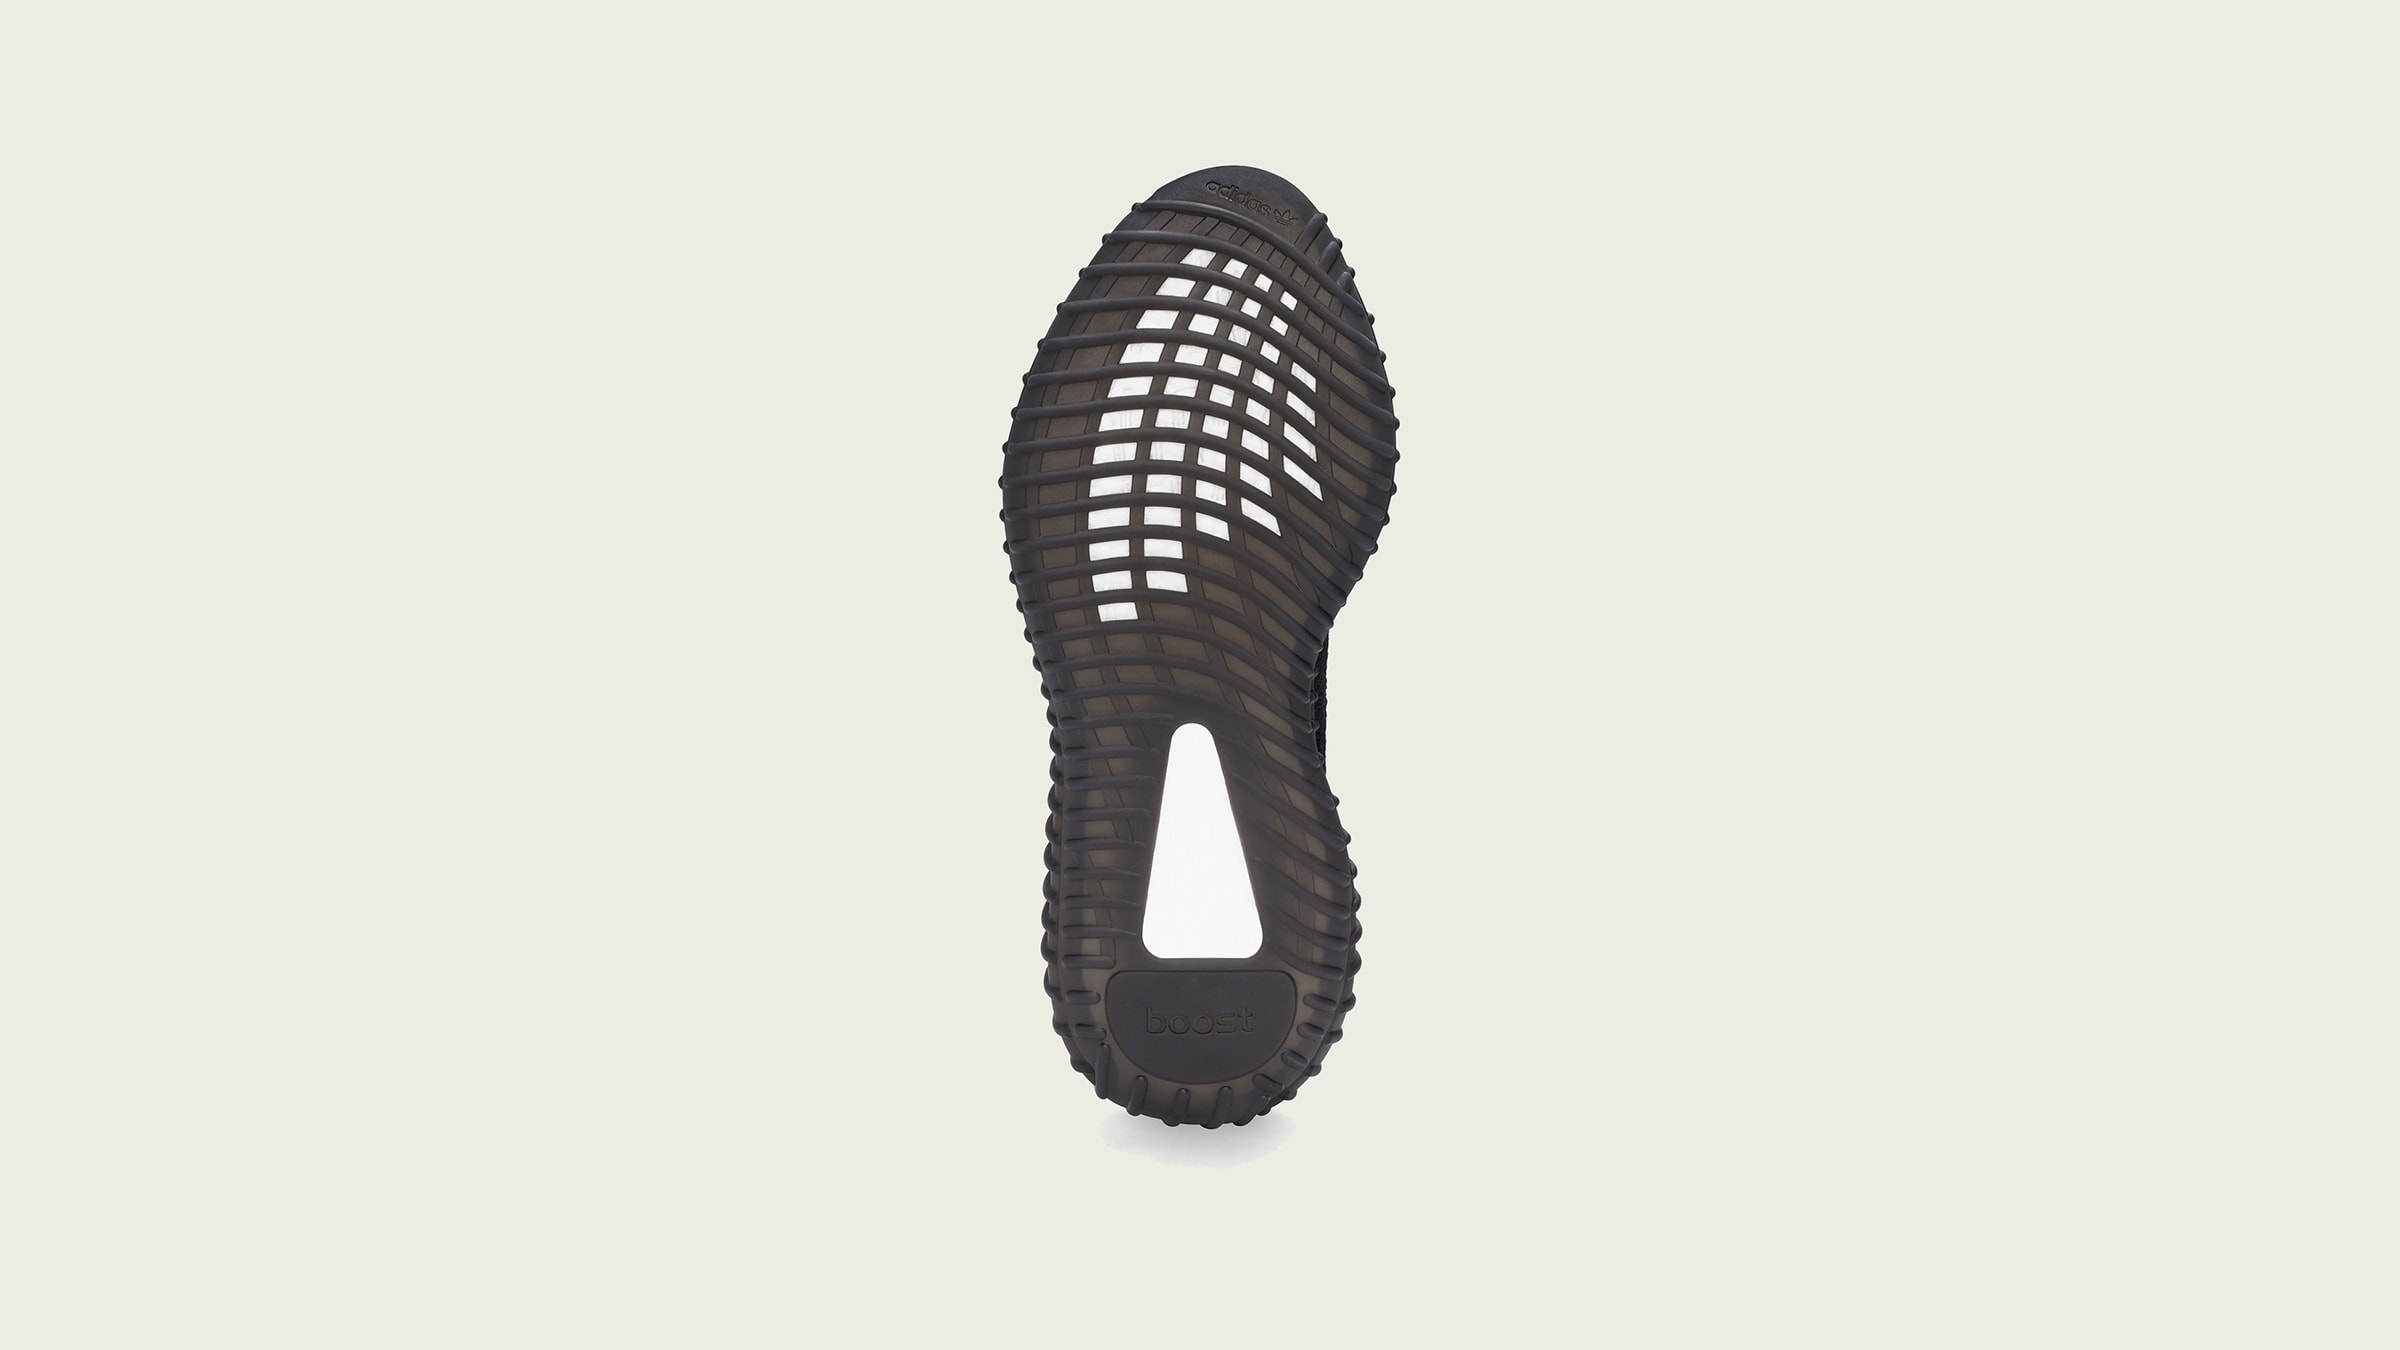 Adidas Yeezy Boost 350 Adidas Kanye Shoes Size - ebay.com